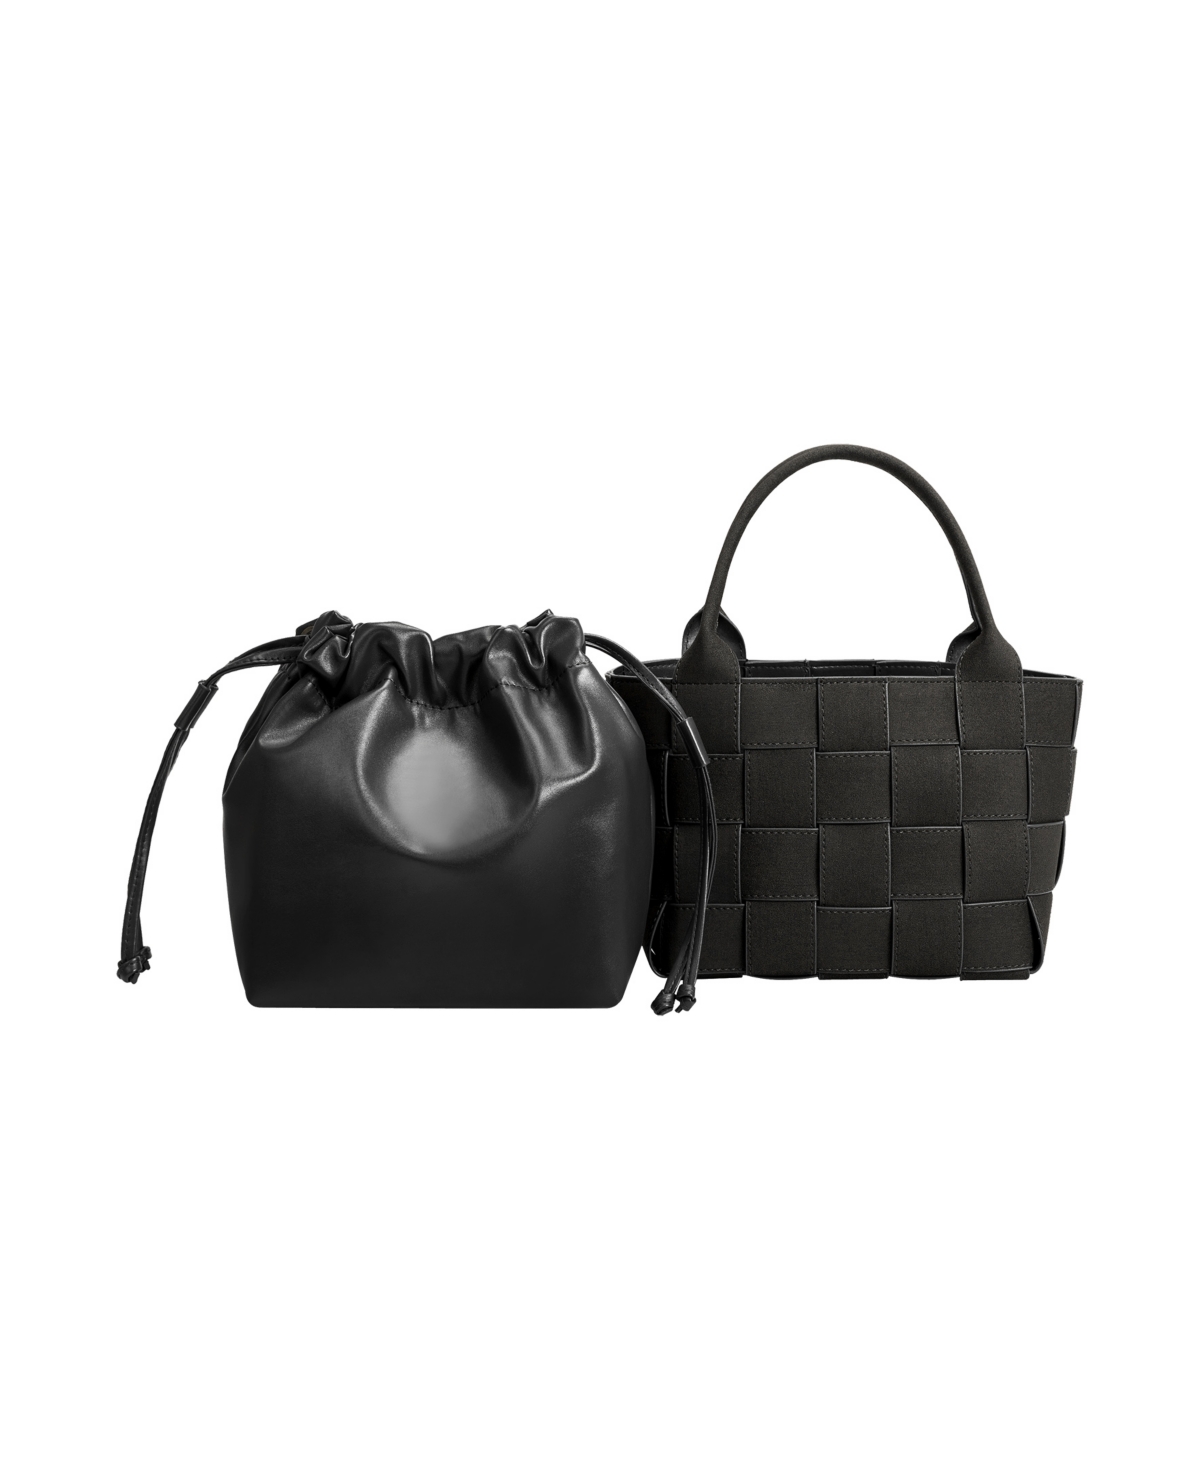 Melie Bianco Women's Lyndsey Tote Bag In Black